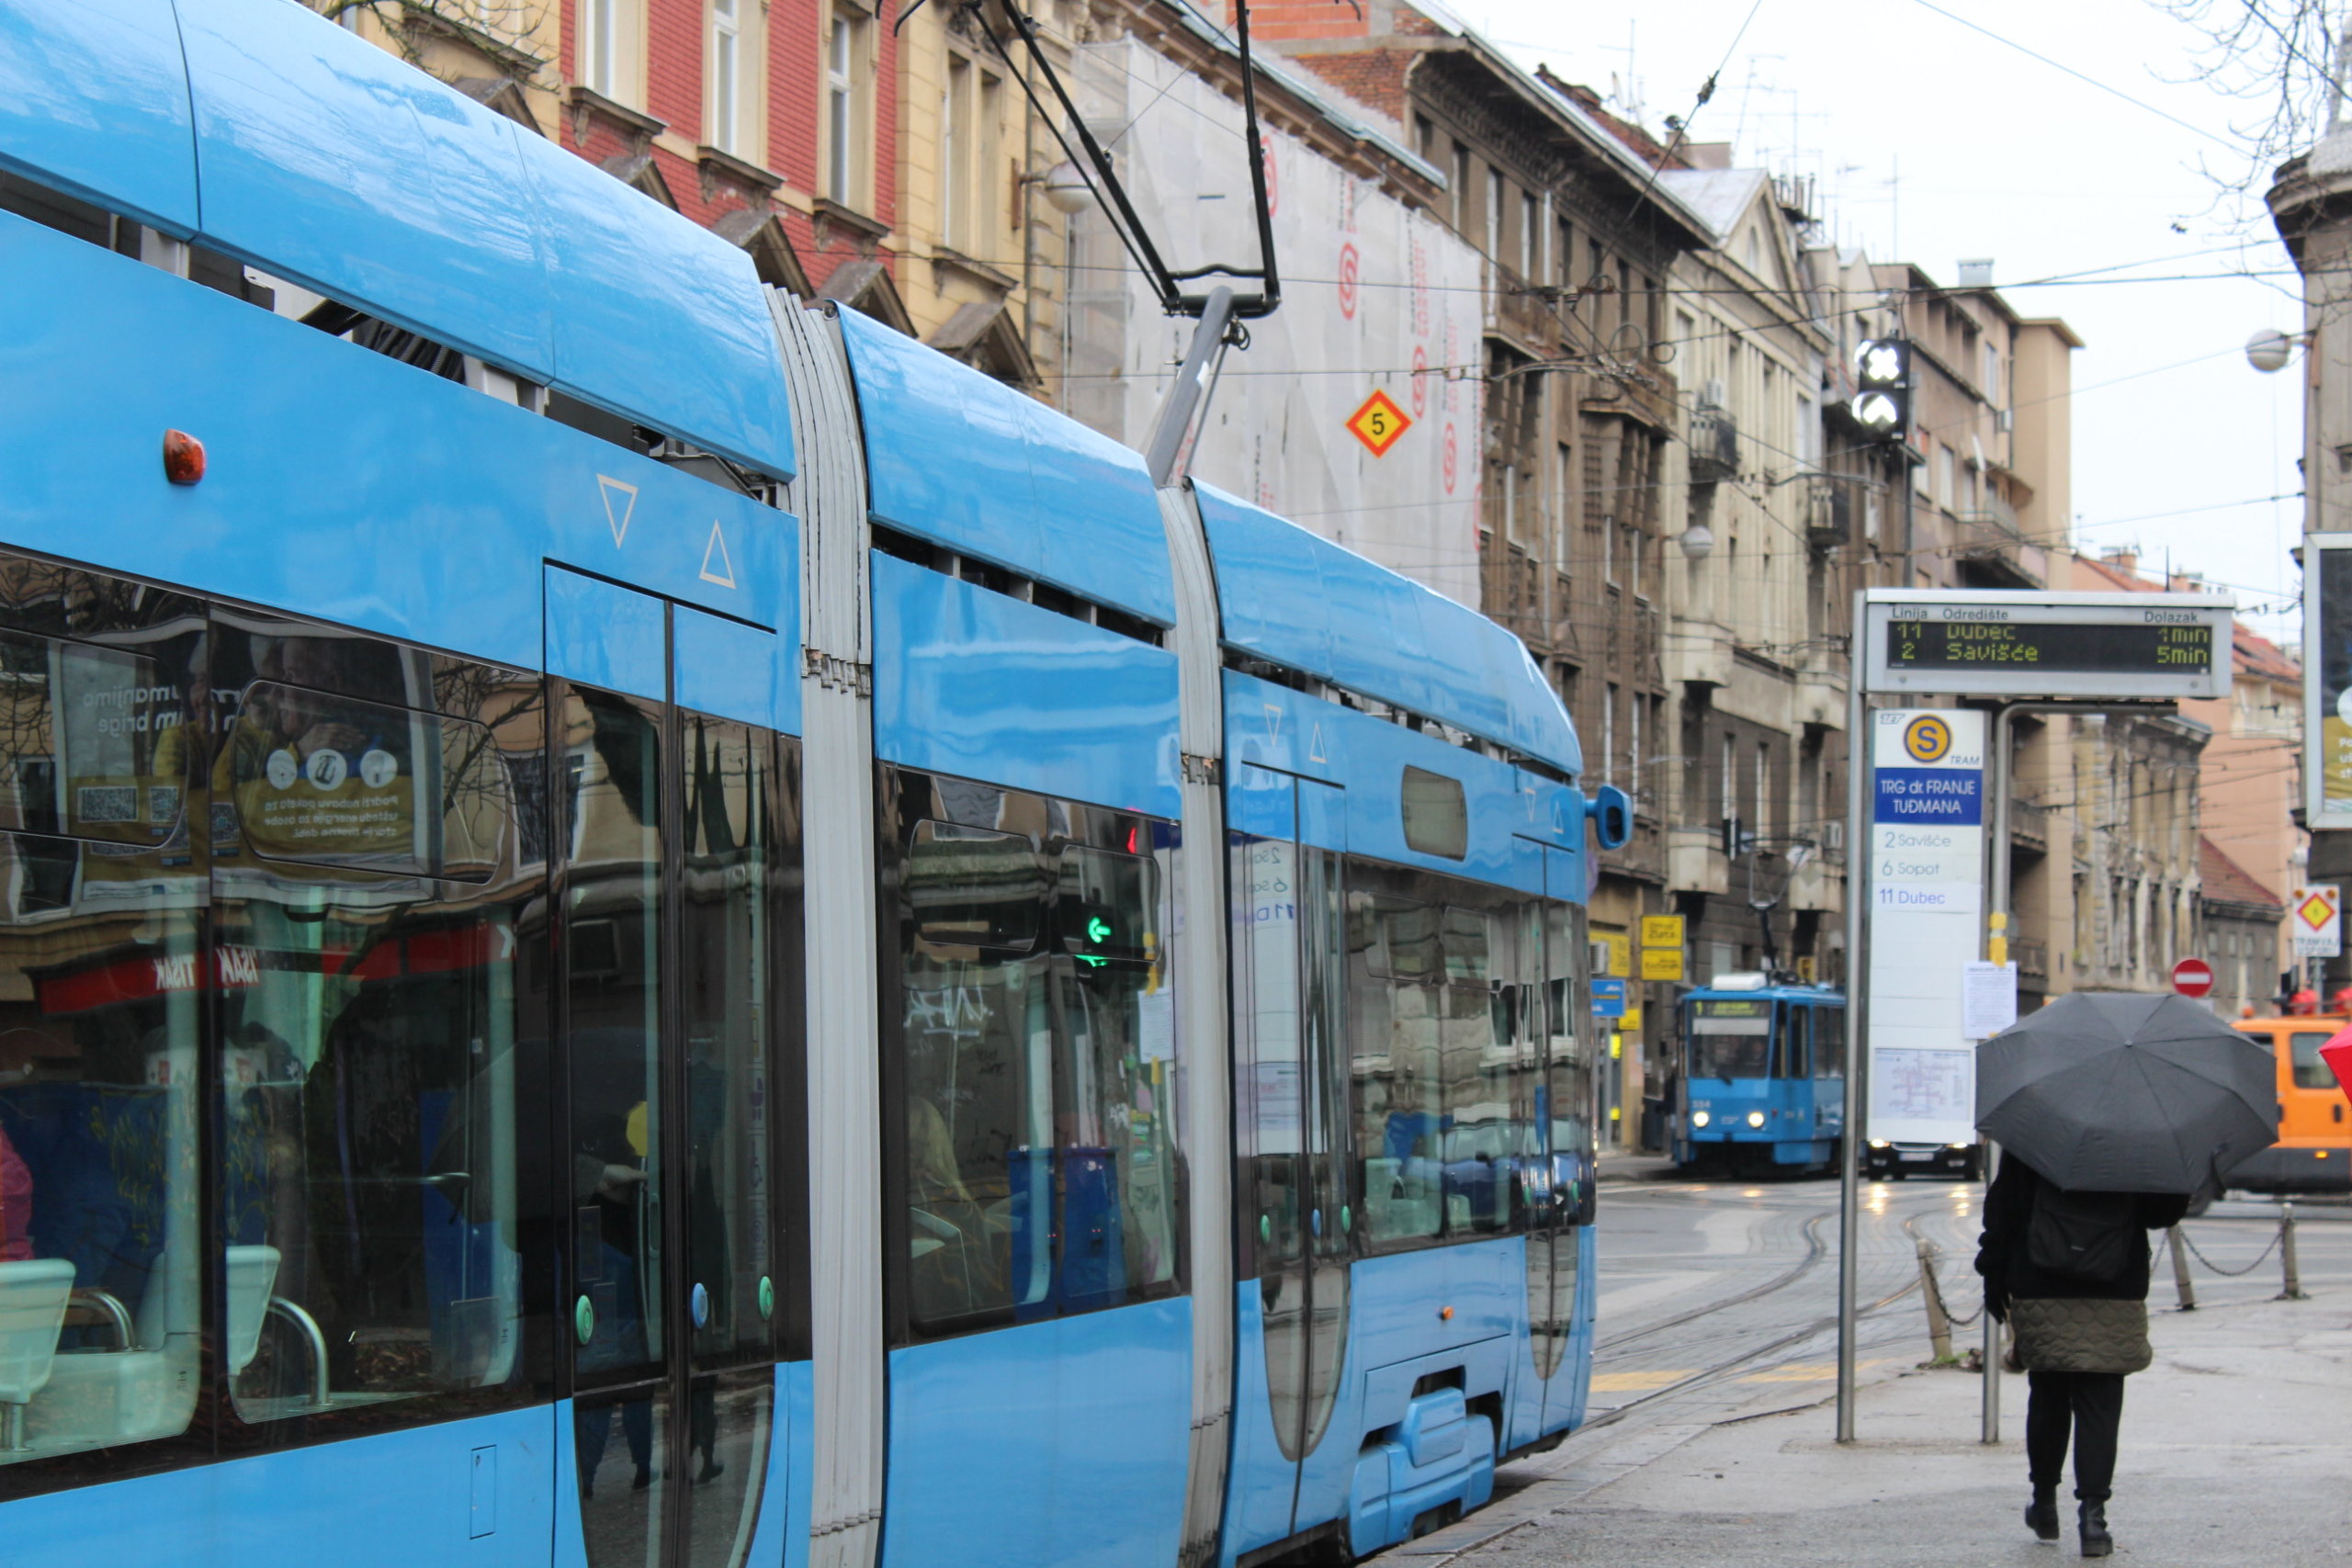 plavi zet tramvaj vozi po tramvajskoj pruzi